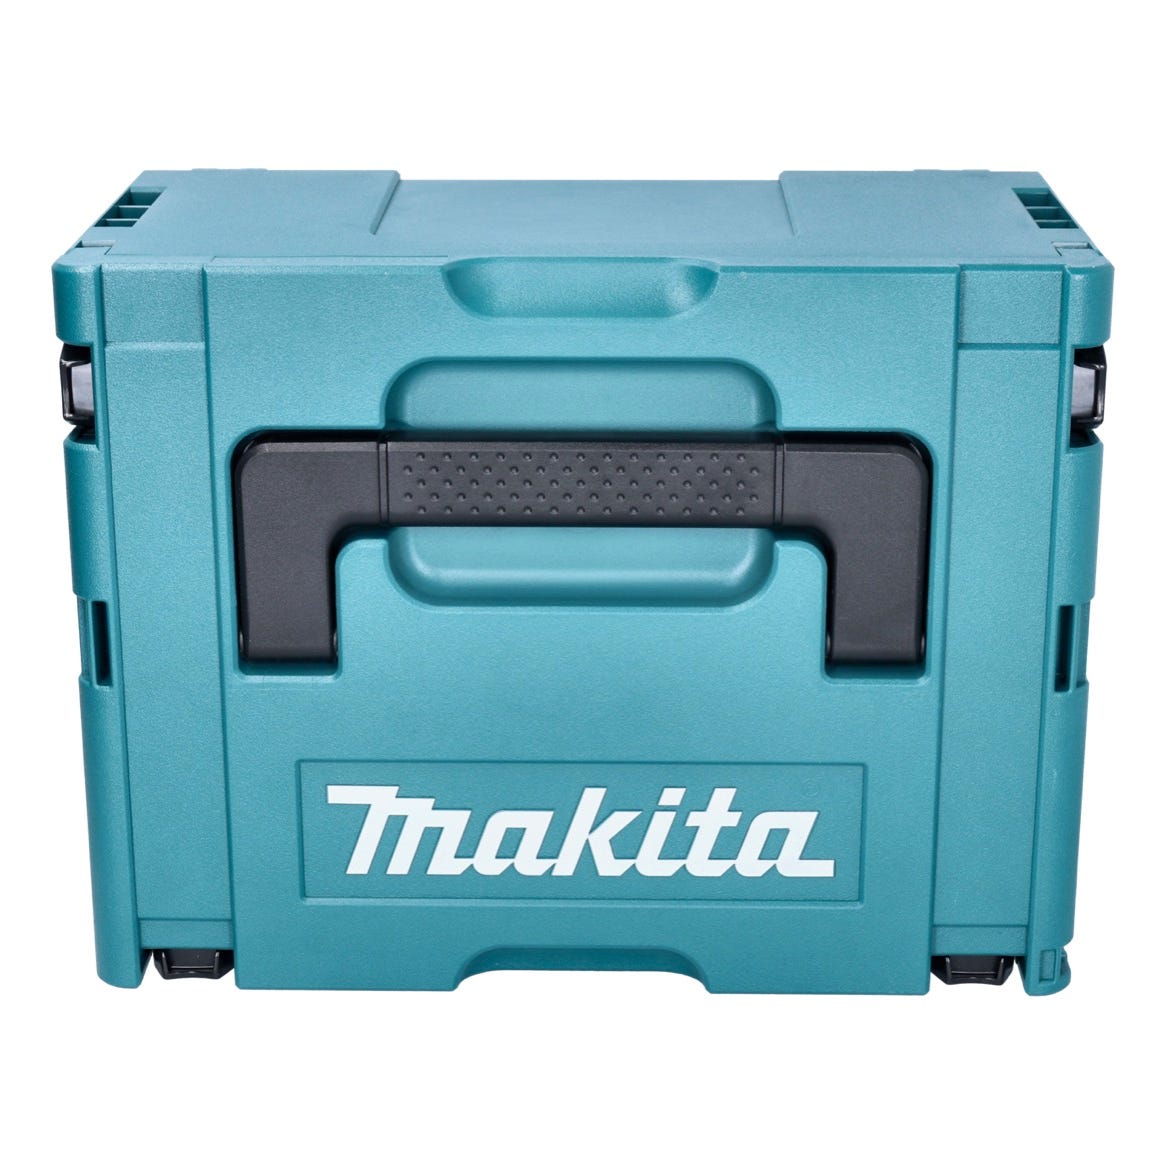 Makita DJS 200 G1J Cisaille à tôle sans fil 18 V 2,0 mm Brushless + 1x batterie 6,0 Ah + Makpac - sans chargeur 2